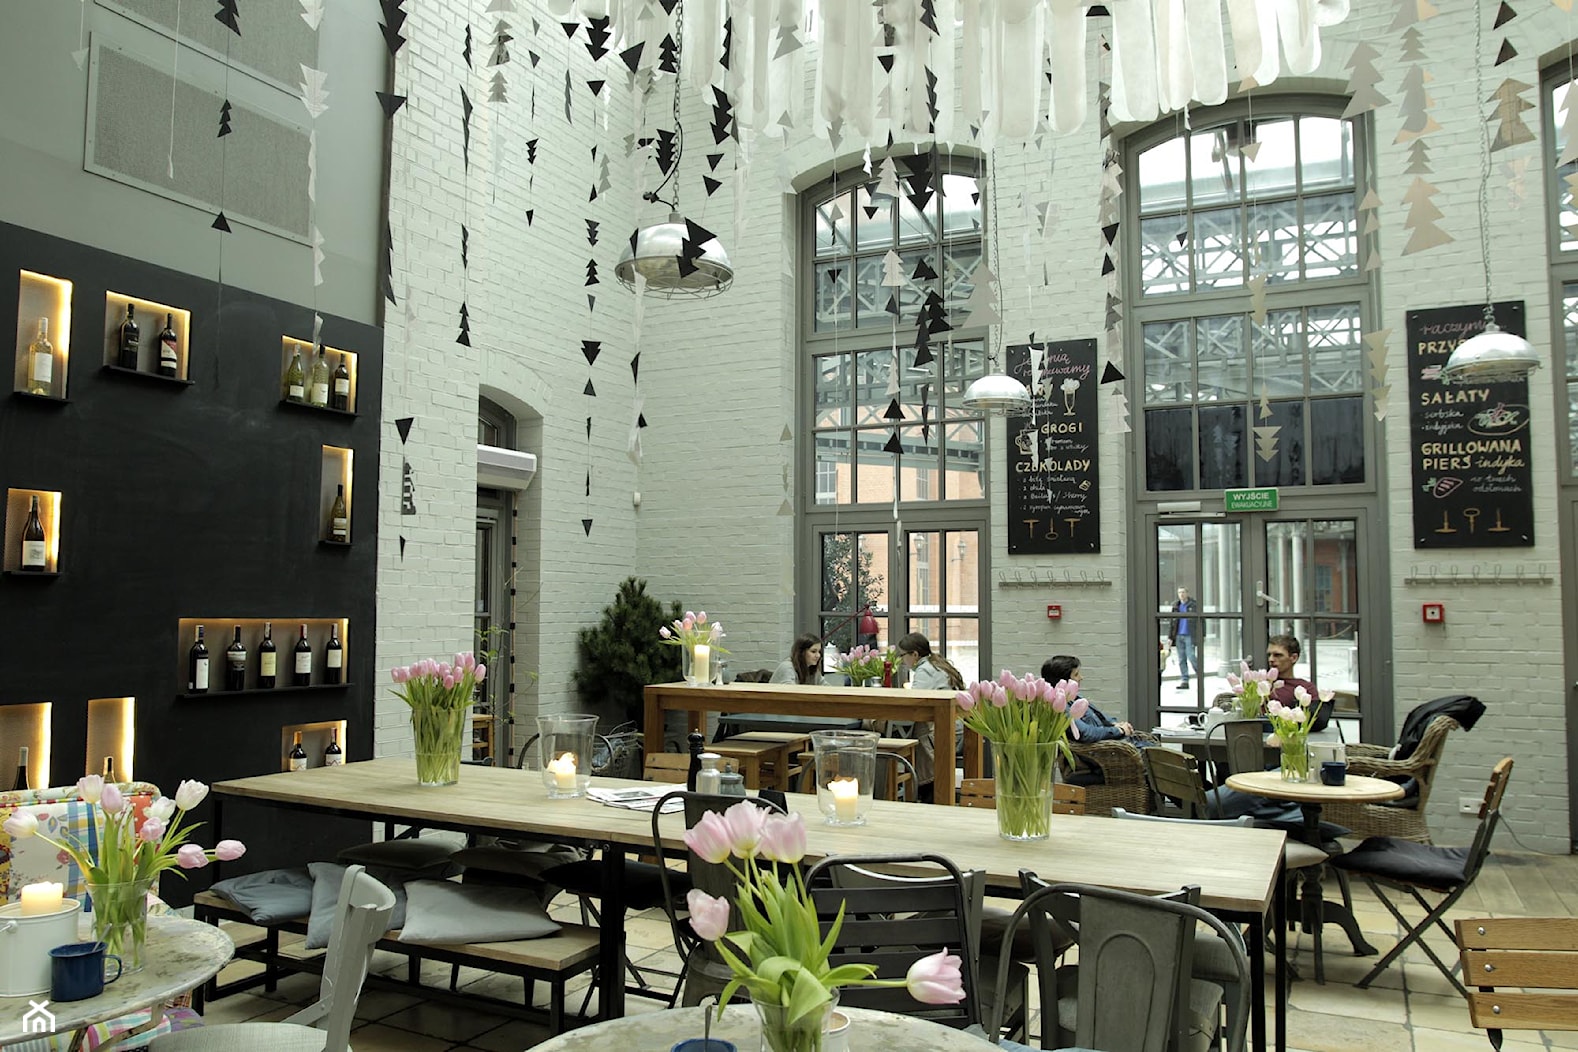 Weranda Lunch & Wine - Wnętrza publiczne, styl industrialny - zdjęcie od R2D2kolektyw - Homebook